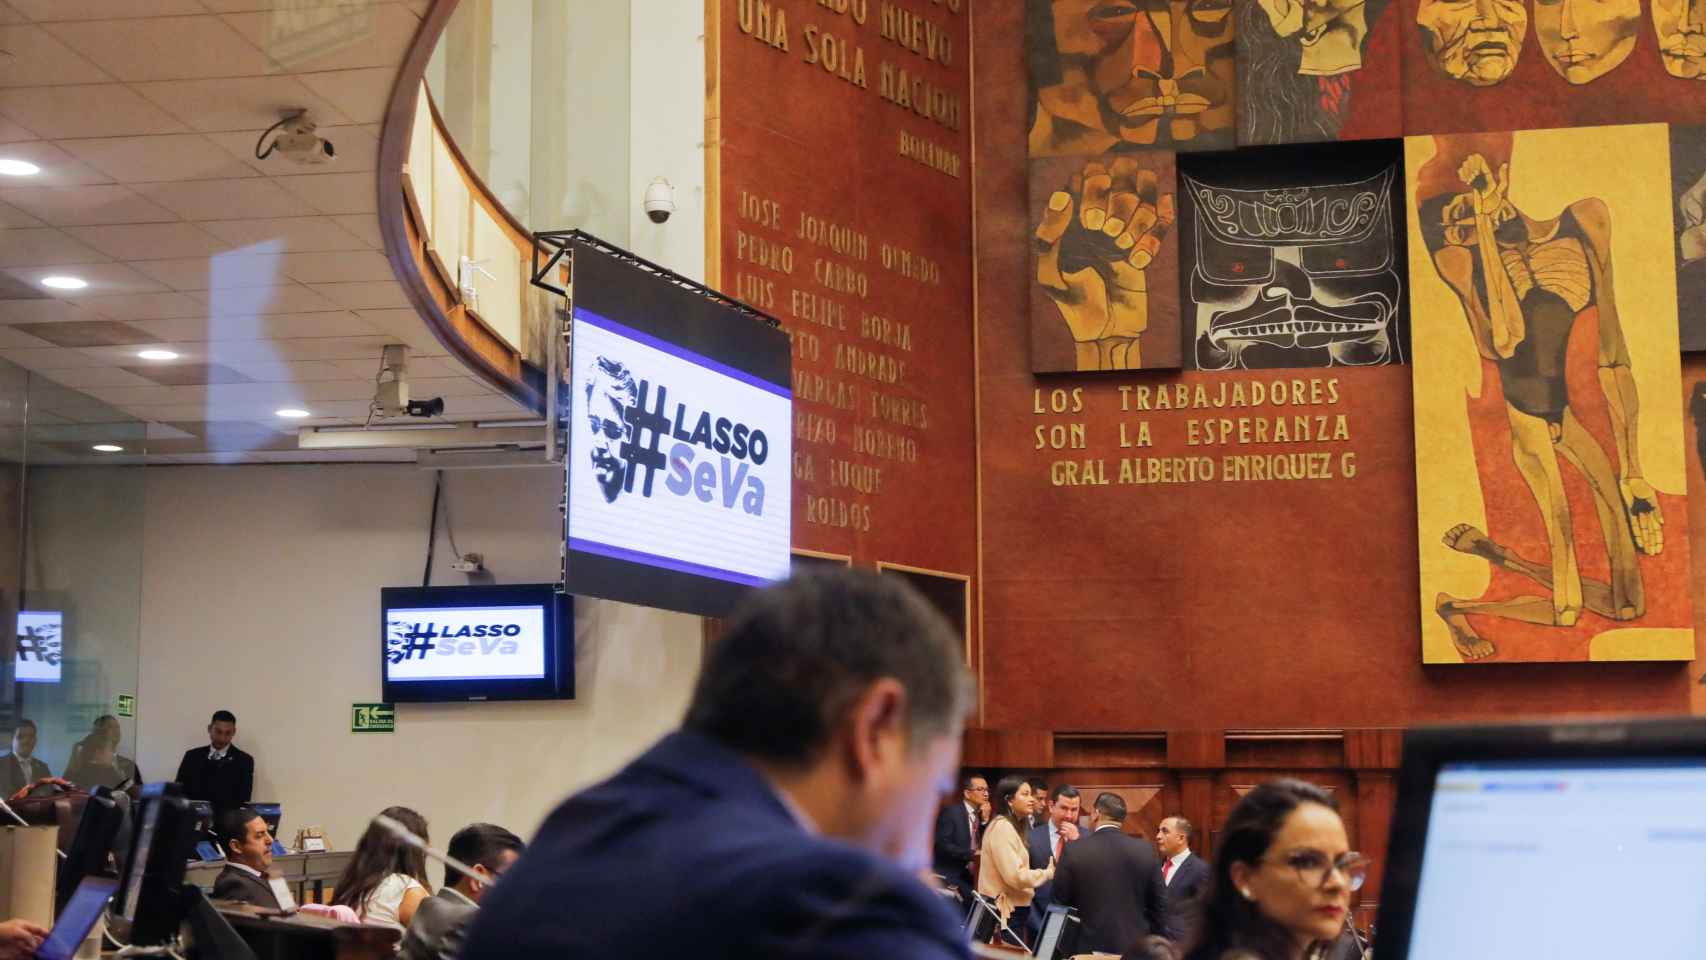 Una pantalla de la Asamblea Nacional ecuatoriana muestra el eslogan #Lasso Se Va.